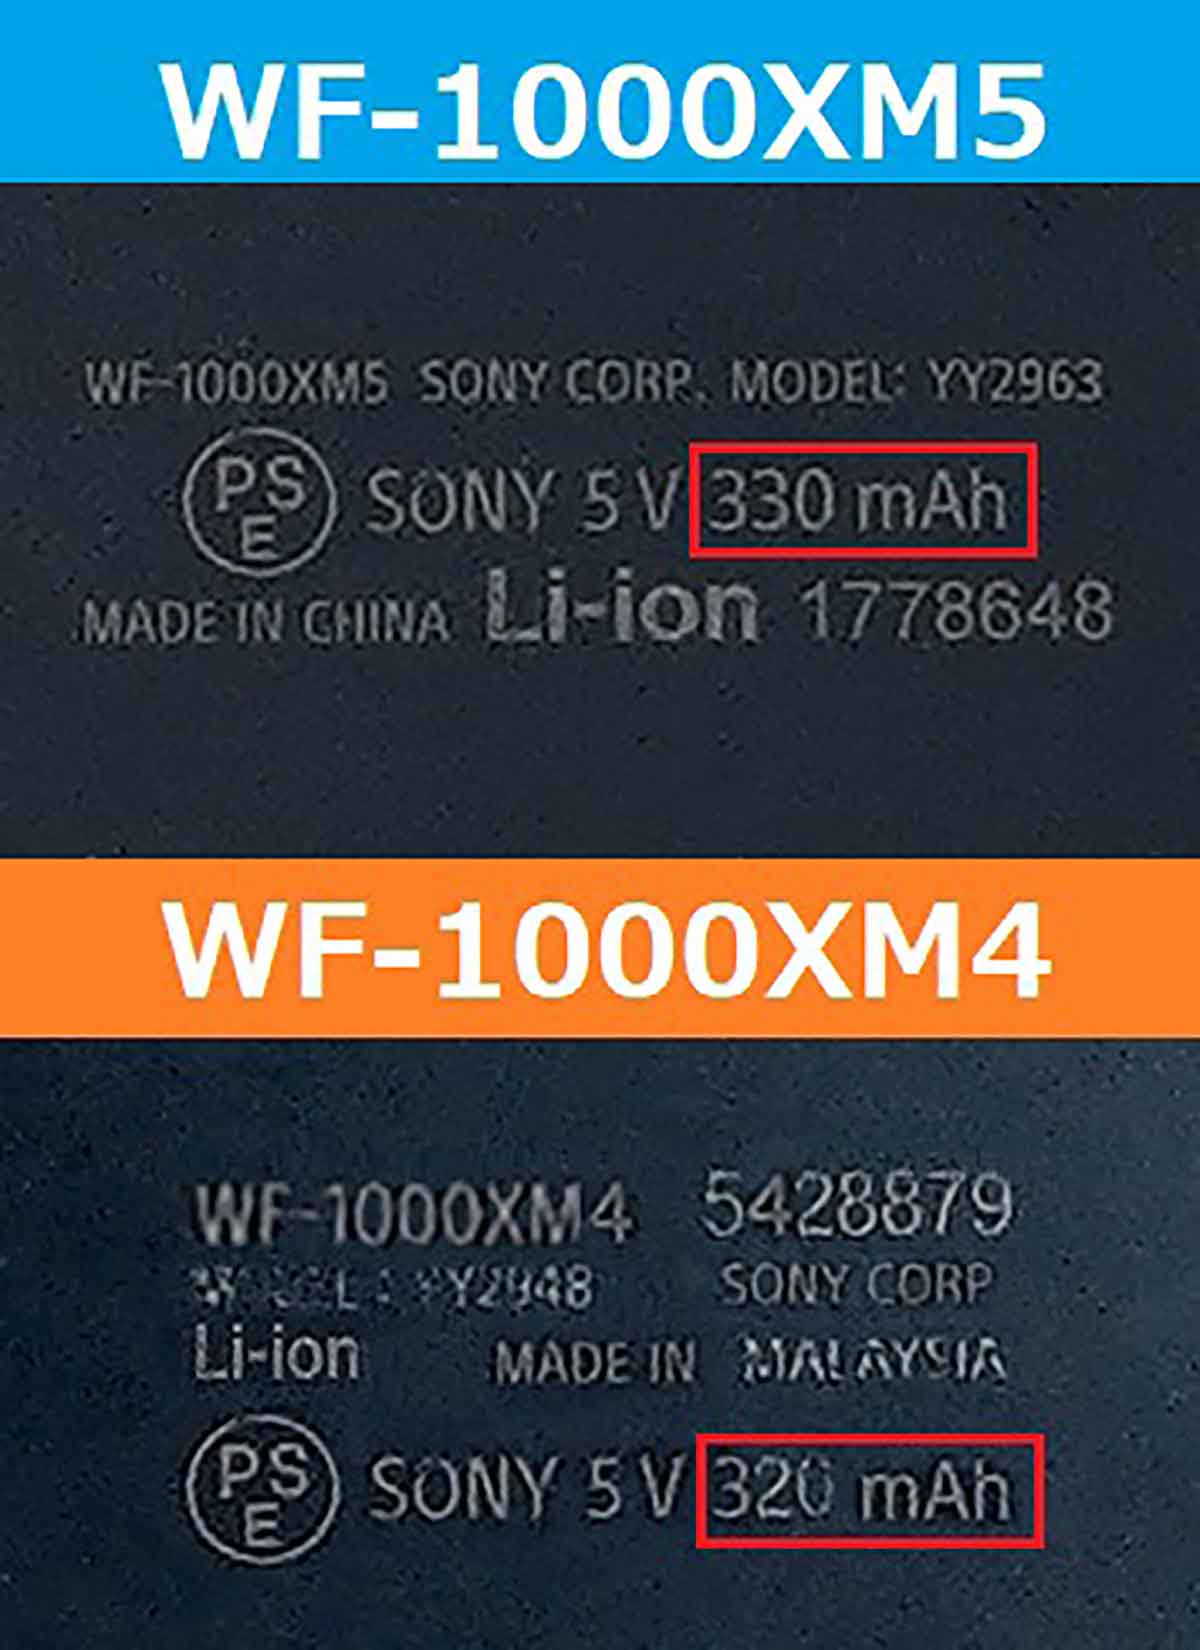 ソニー「WF-1000XM5」は前機種「XM4」から買い替える価値はあるのか検証してみた4